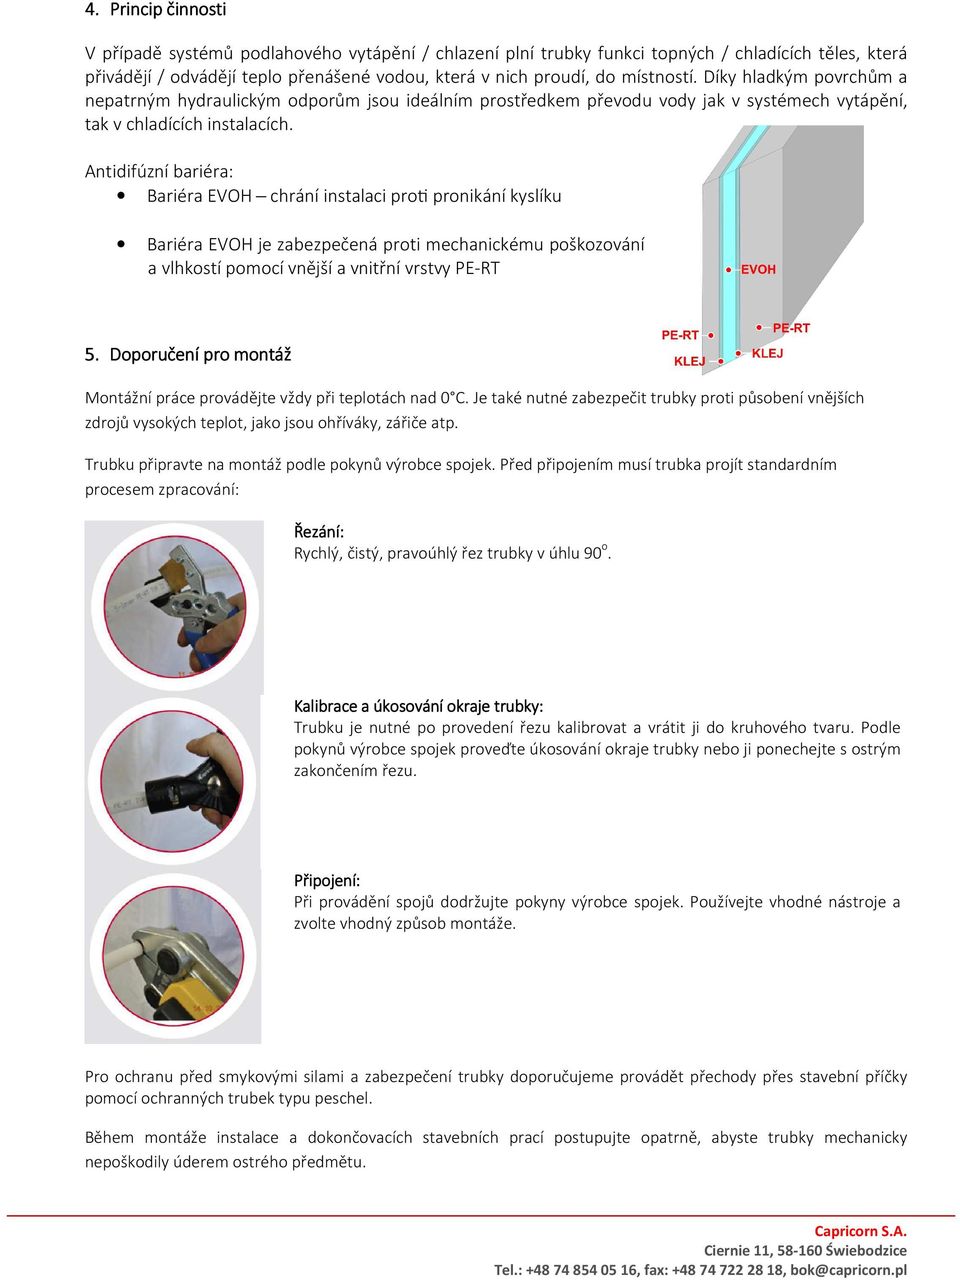 Antidifúzní bariéra: Bariéra EVOH chrání instalaci prom pronikání kyslíku Bariéra EVOH je zabezpečená proti mechanickému poškozování a vlhkostí pomocí vnější a vnitřní vrstvy PE-RT 5.